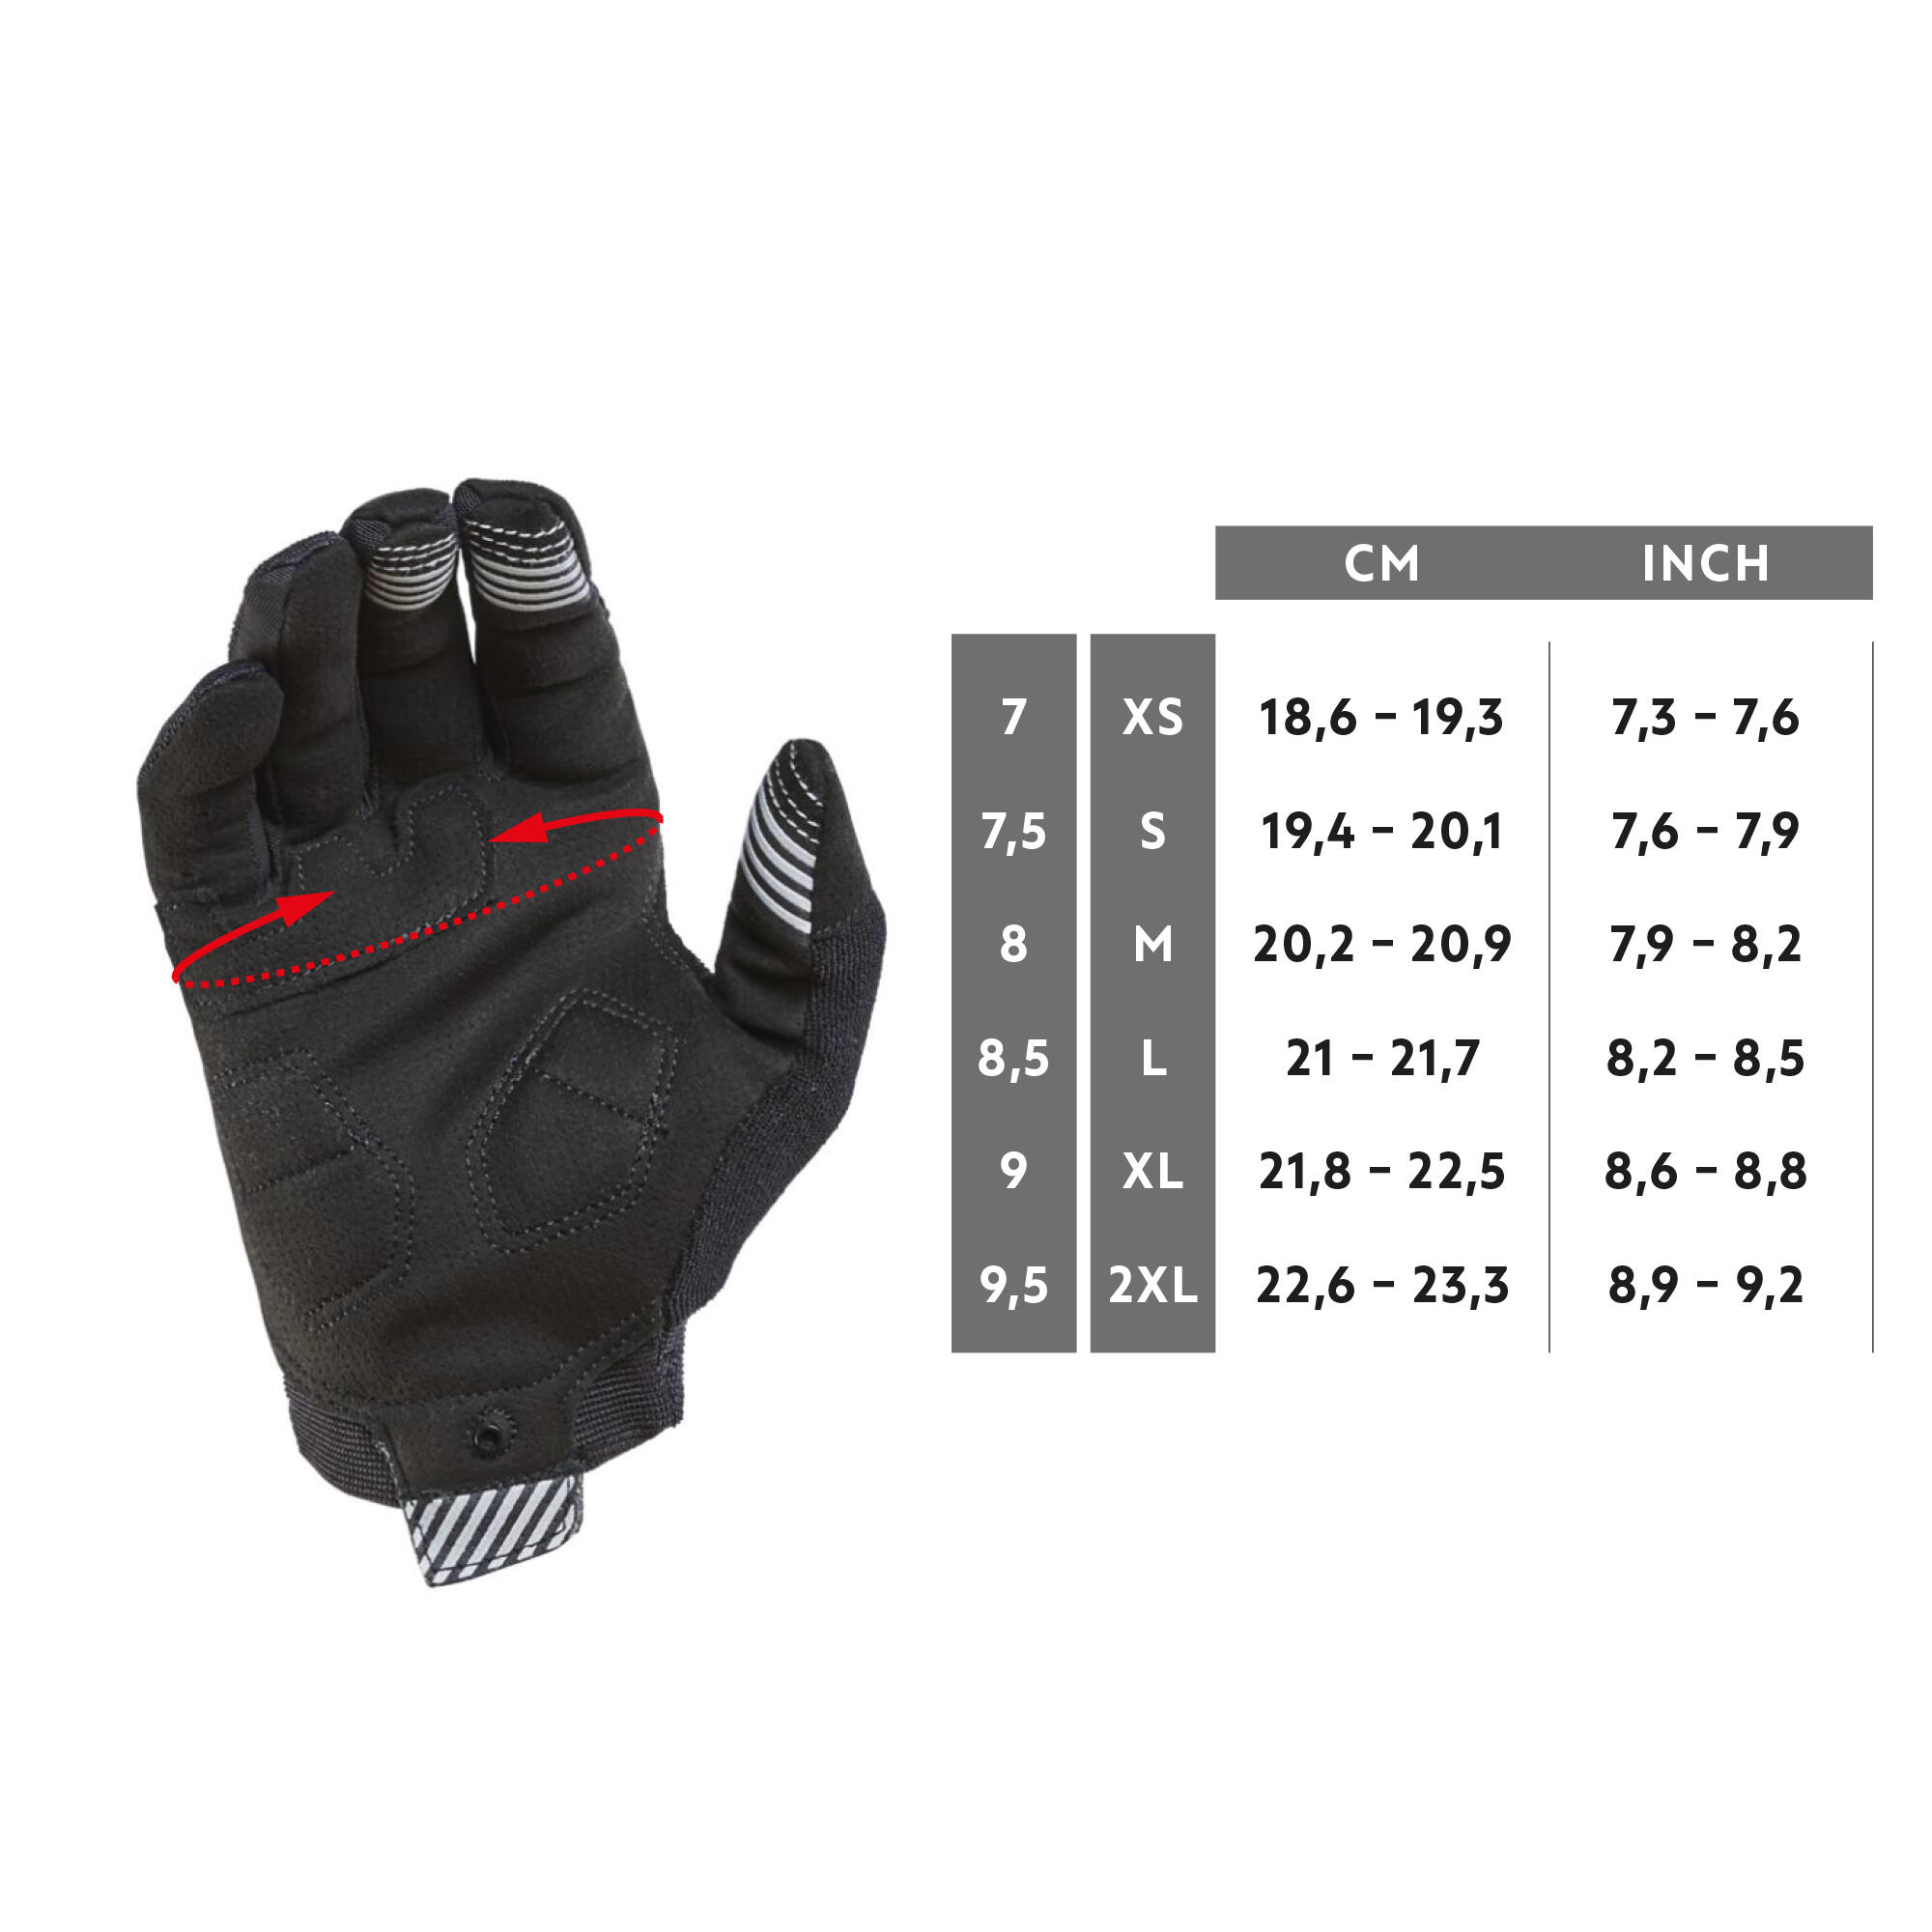 ST 500 mountain biking gloves - ROCKRIDER